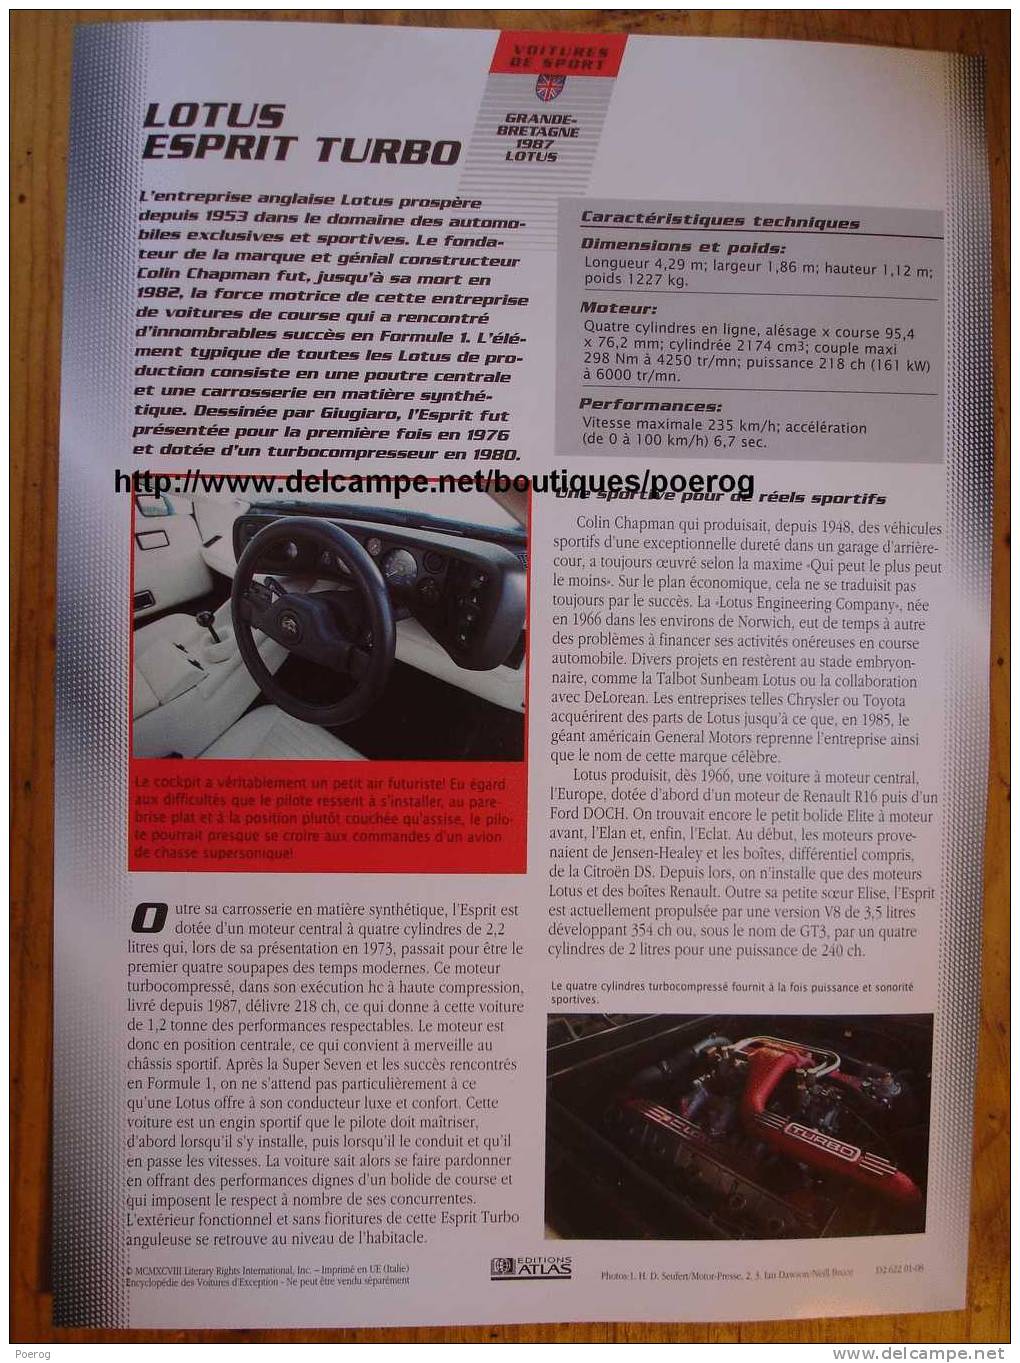 LOTUS ESPRIT TURBO - FICHE VOITURE GRAND FORMAT (A4) - 1998 - Auto Automobile Automobiles Voitures Car Cars - Automobili